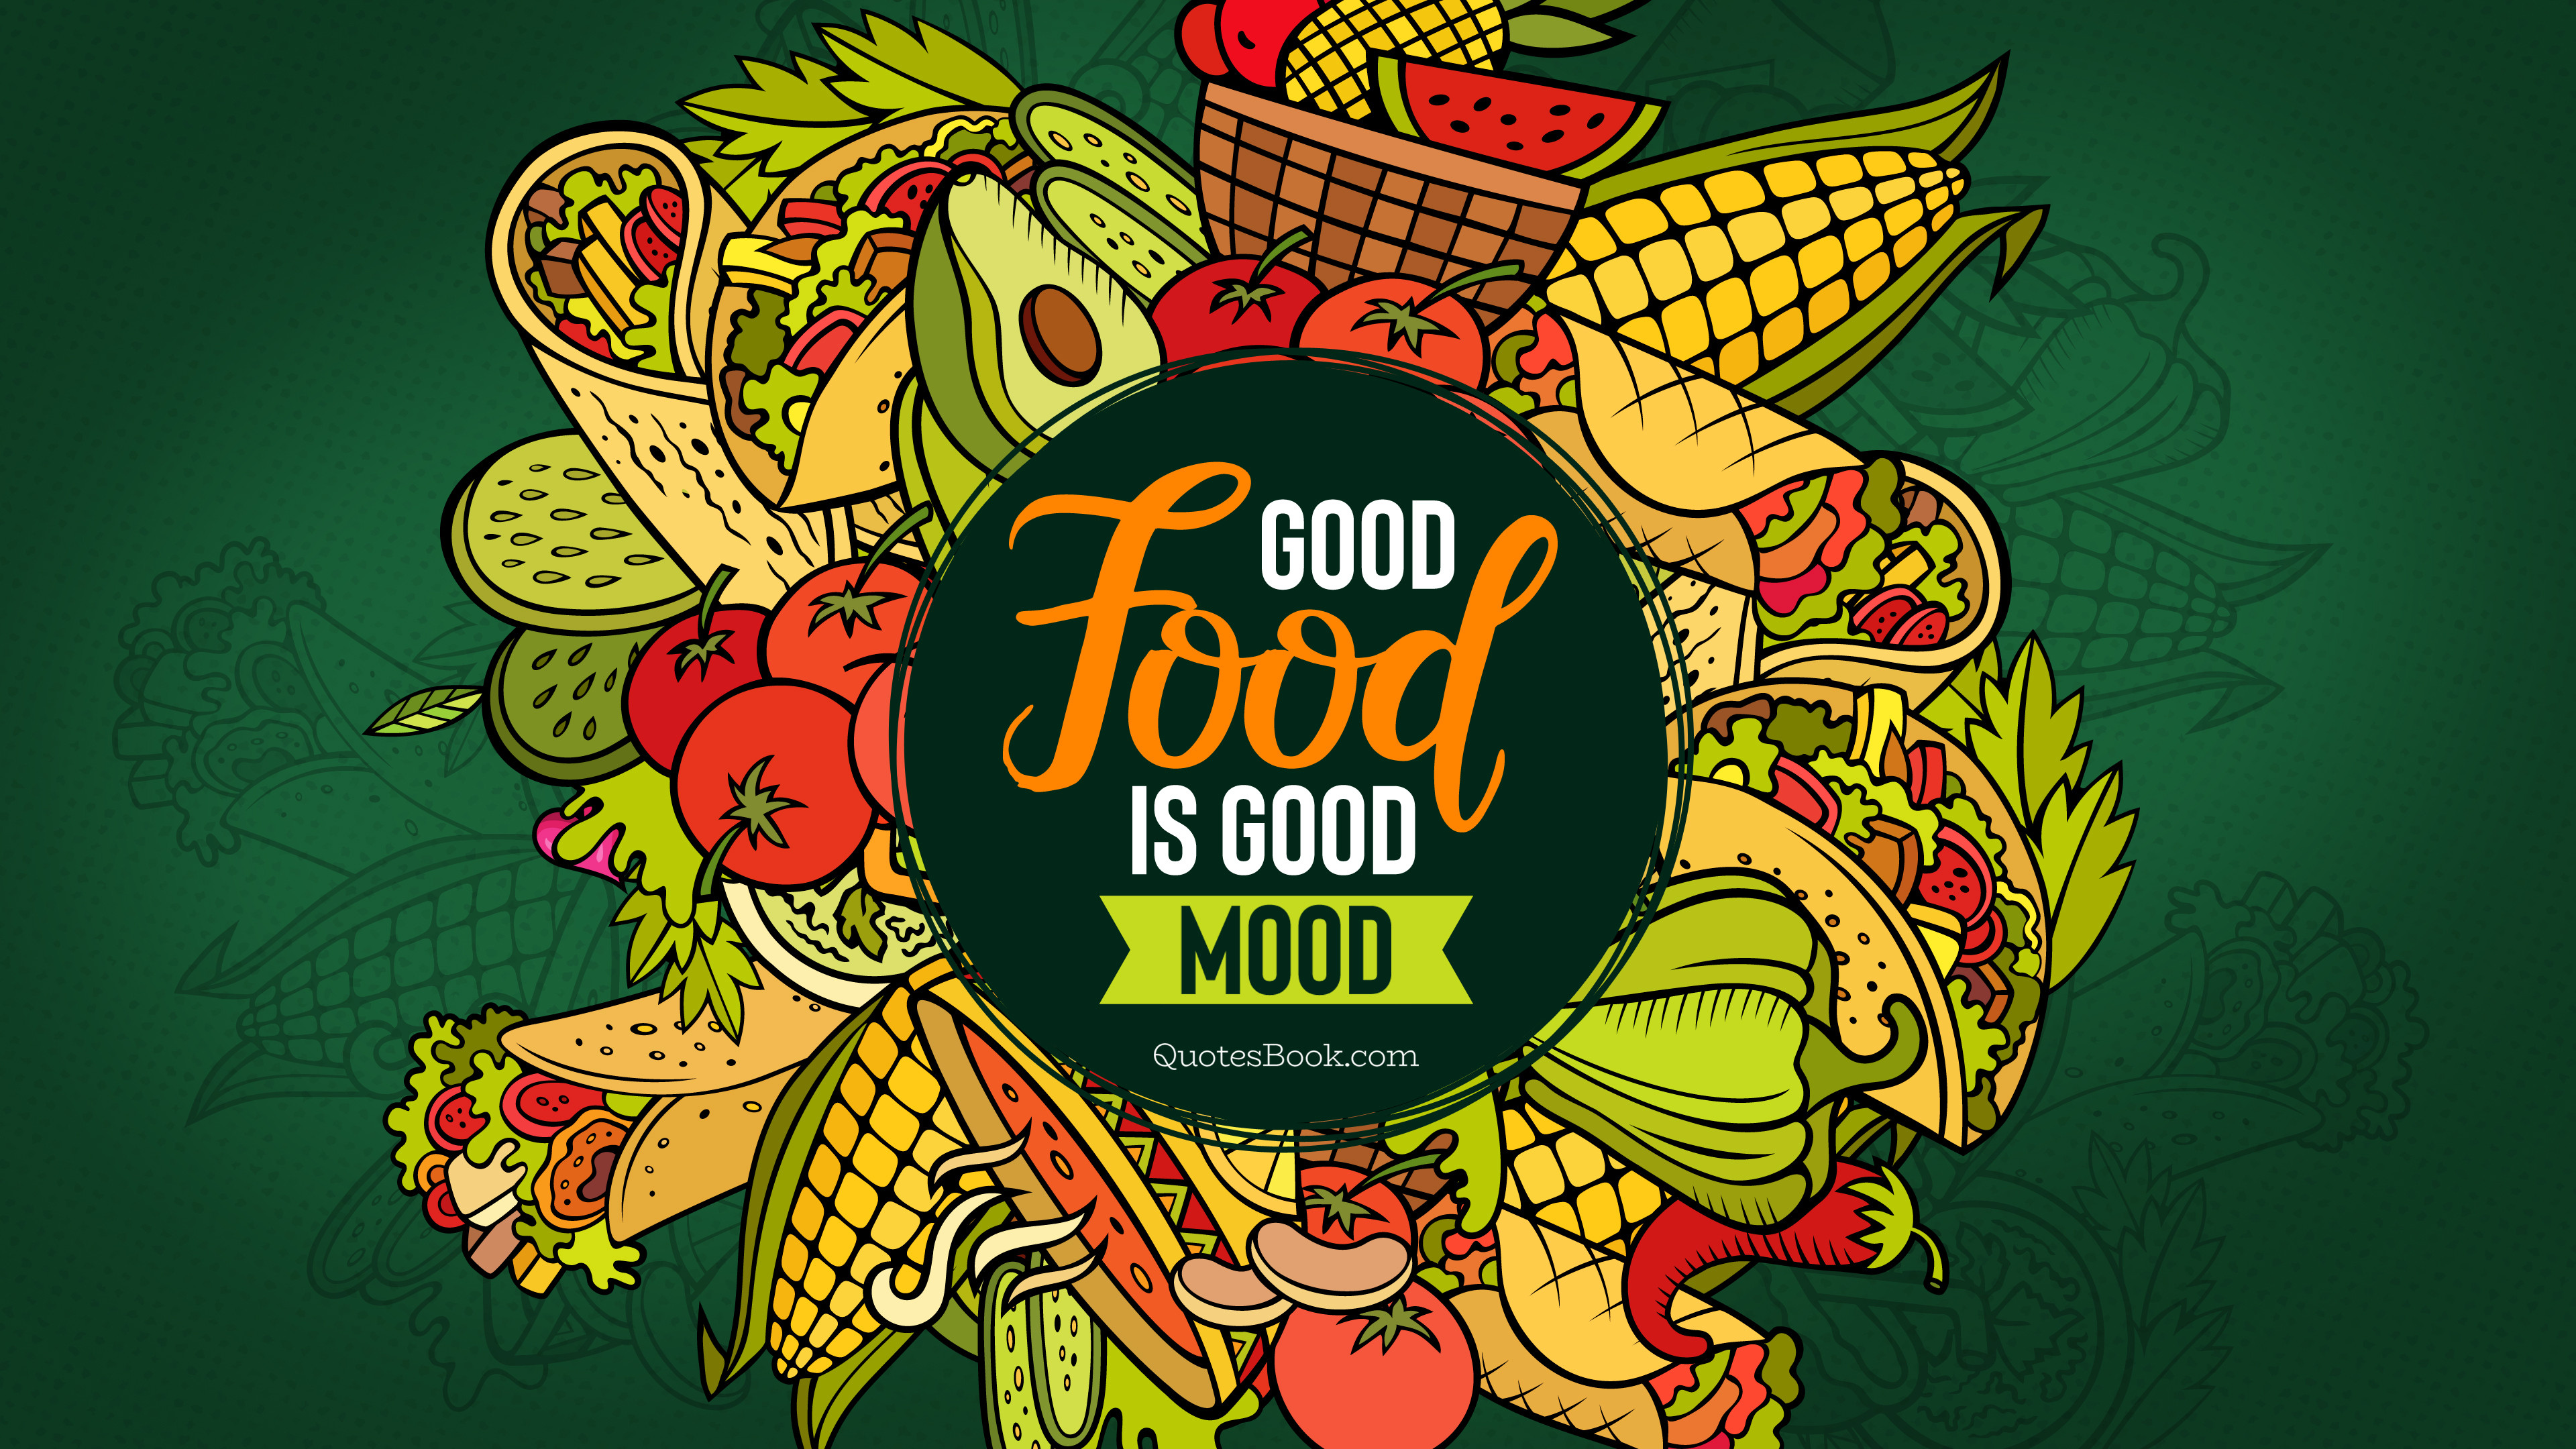 Good Food is good mood - QuotesBook